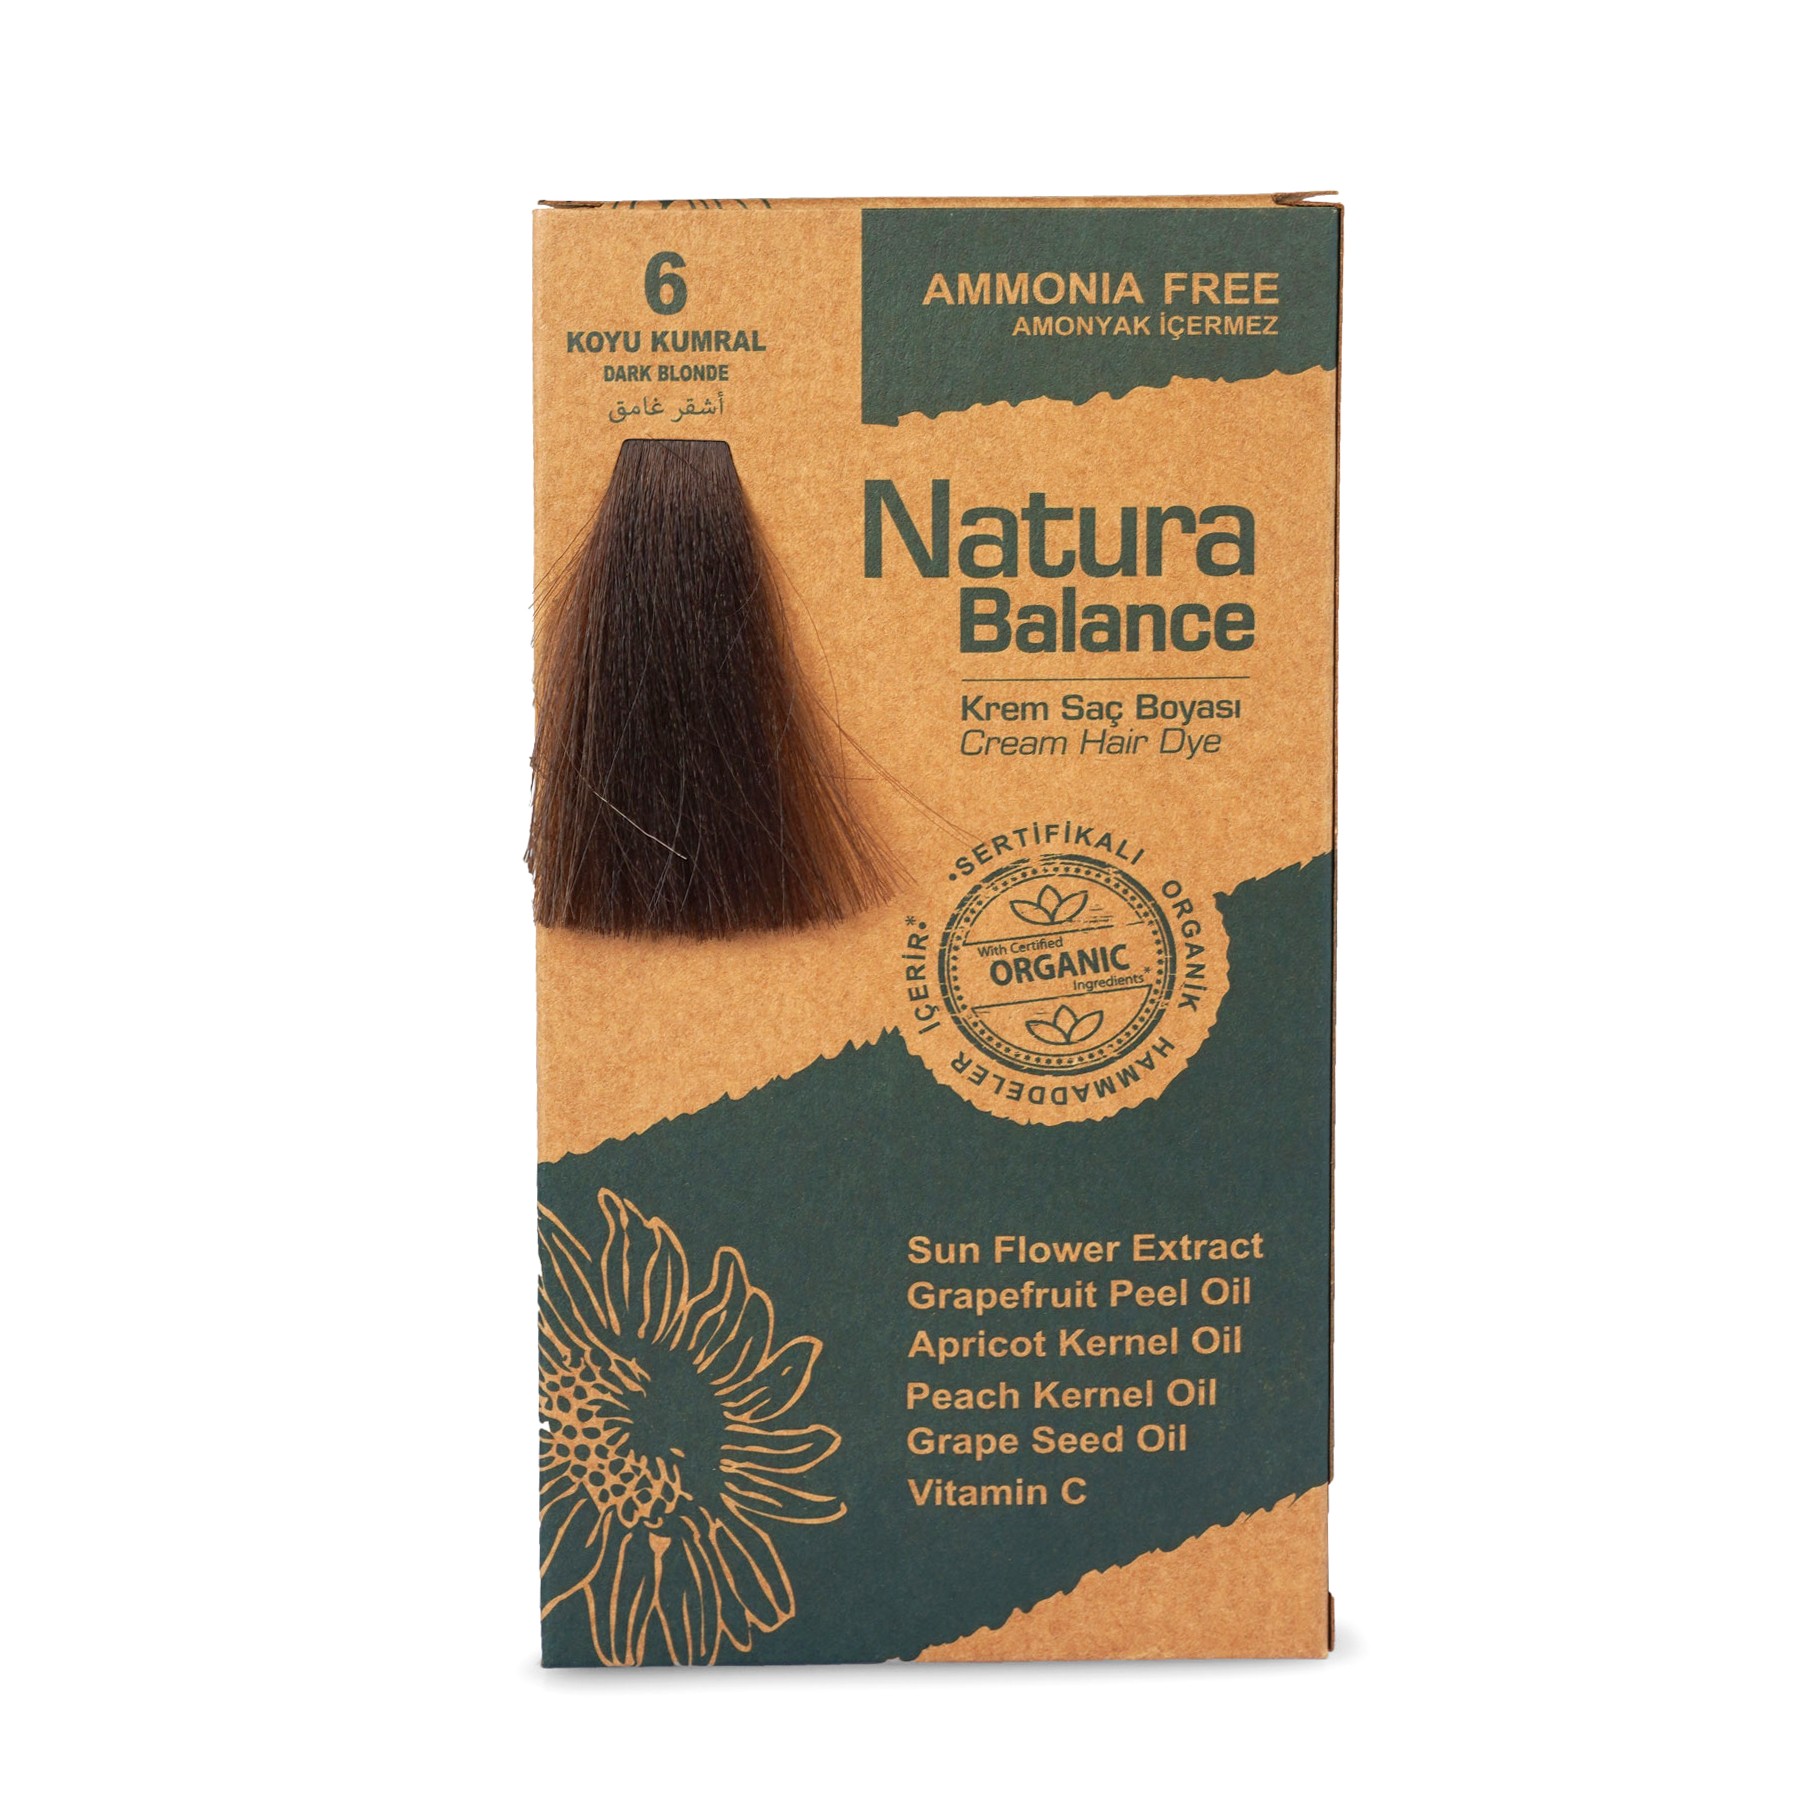 NB Organik Saç Boyası No:6 Koyu Kumral